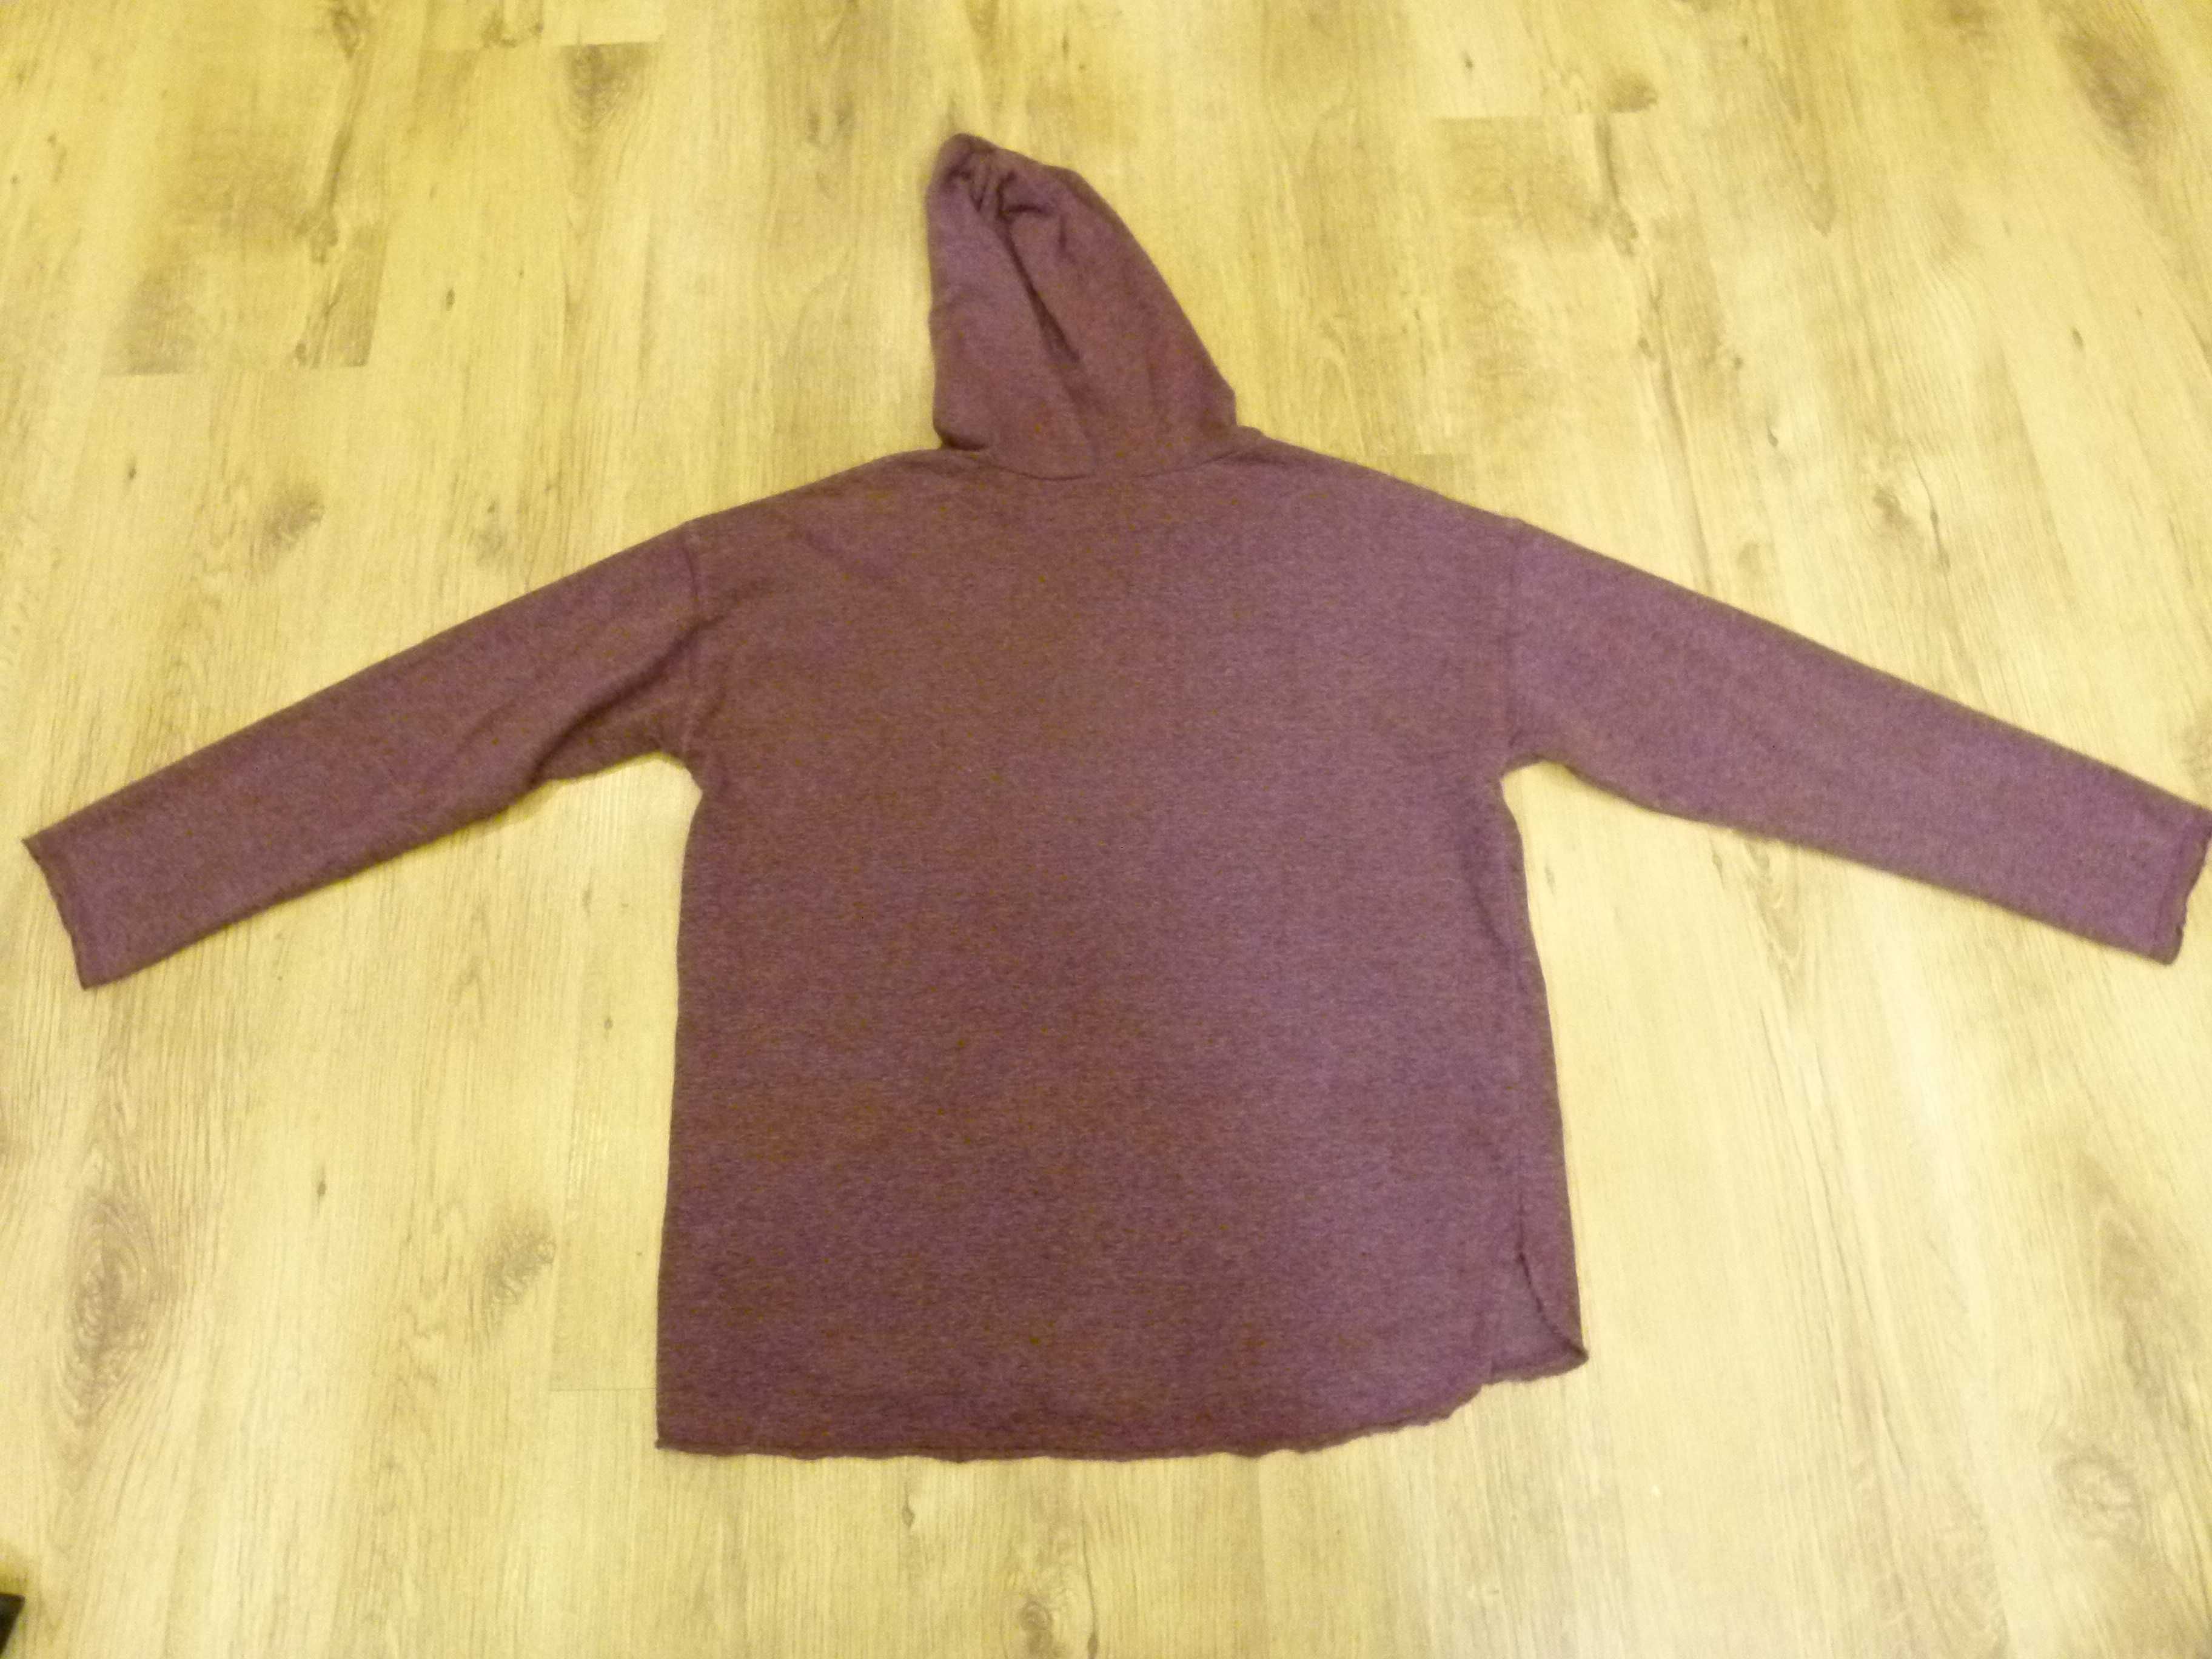 rozm 164 Zara sweter burgundowy z kapturem